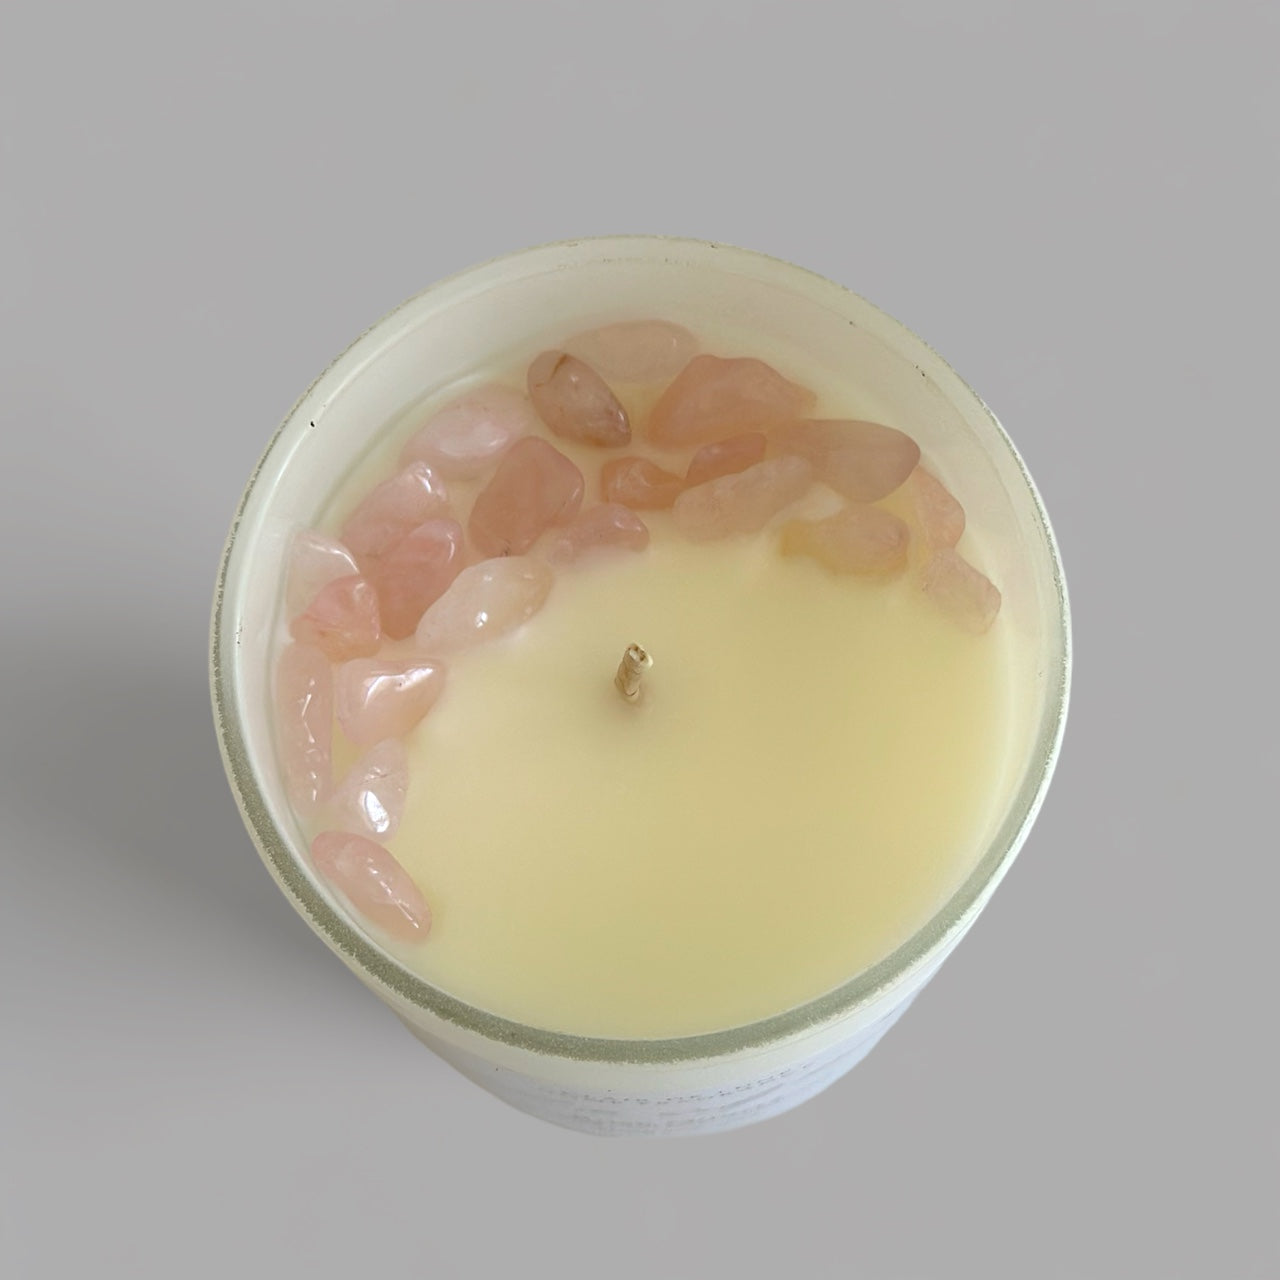 Unwind & self repair candle